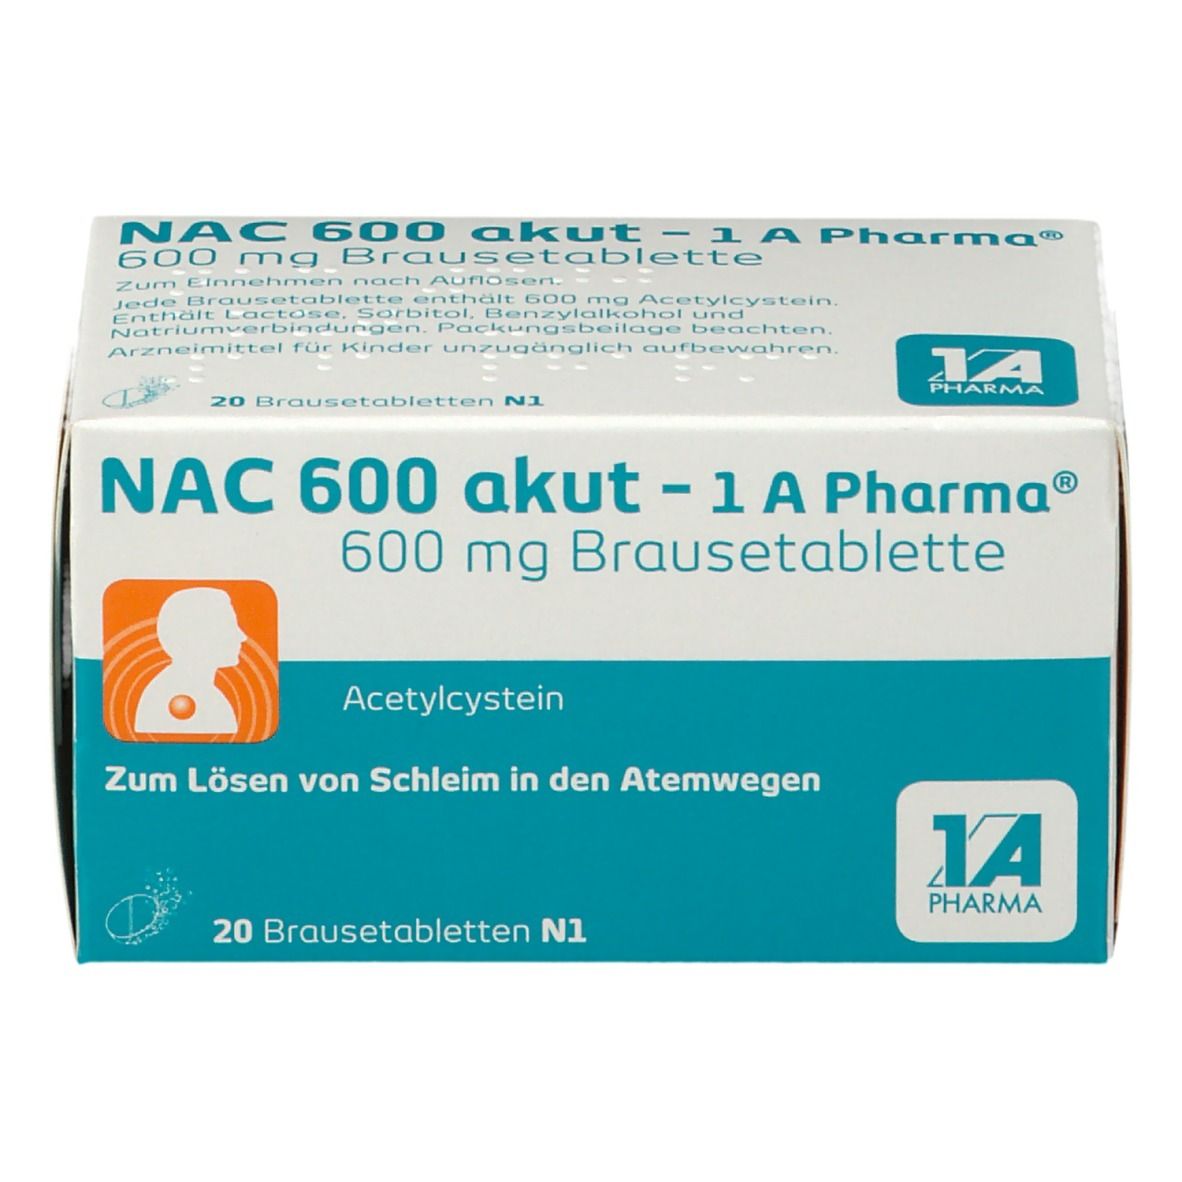 NAC 600 akut - 1A Pharma®